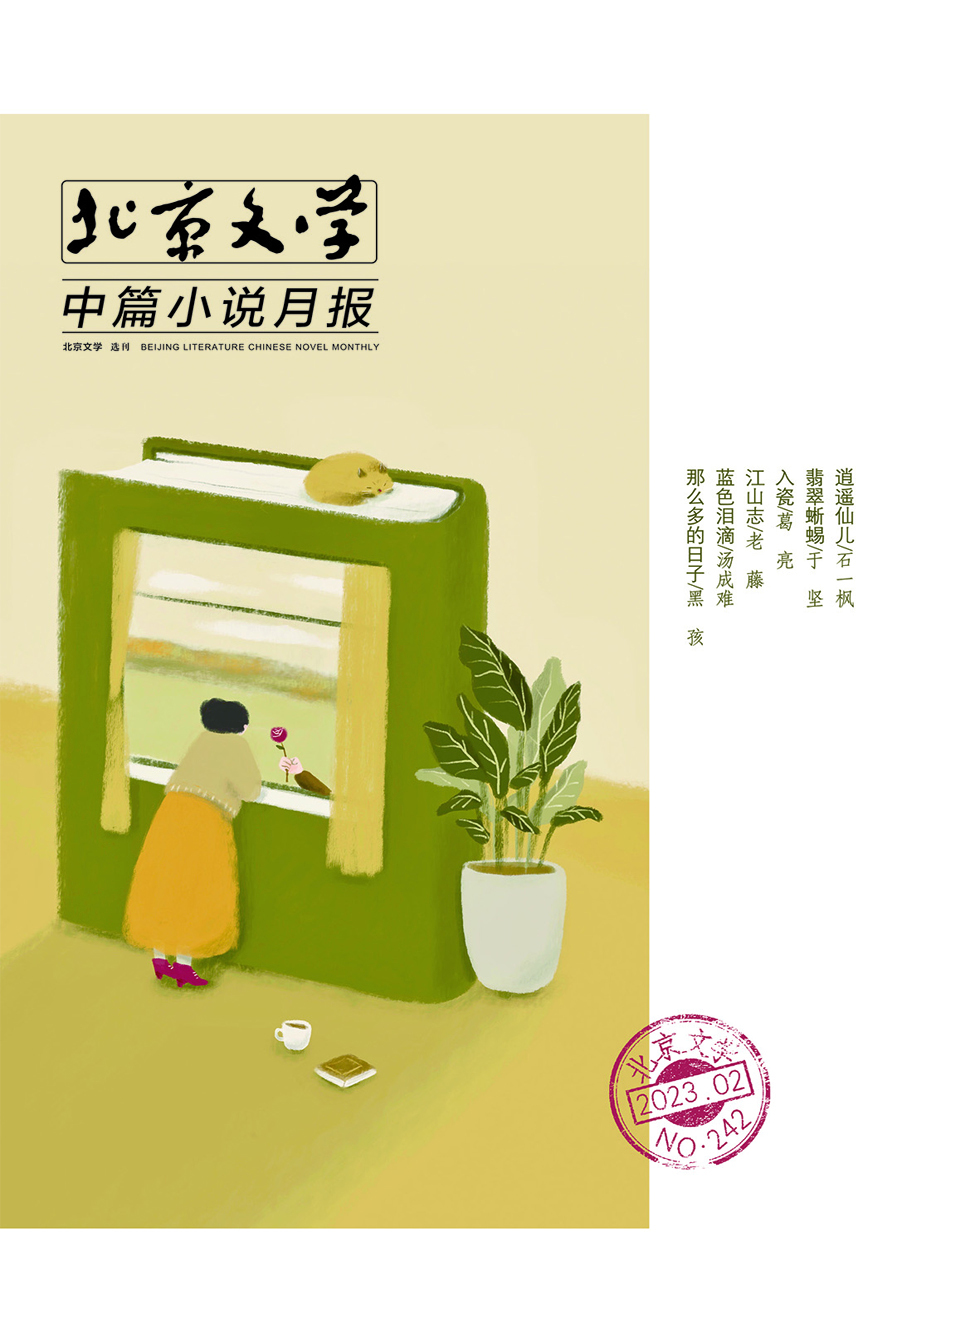 北京文学·中篇小说月报杂志封面